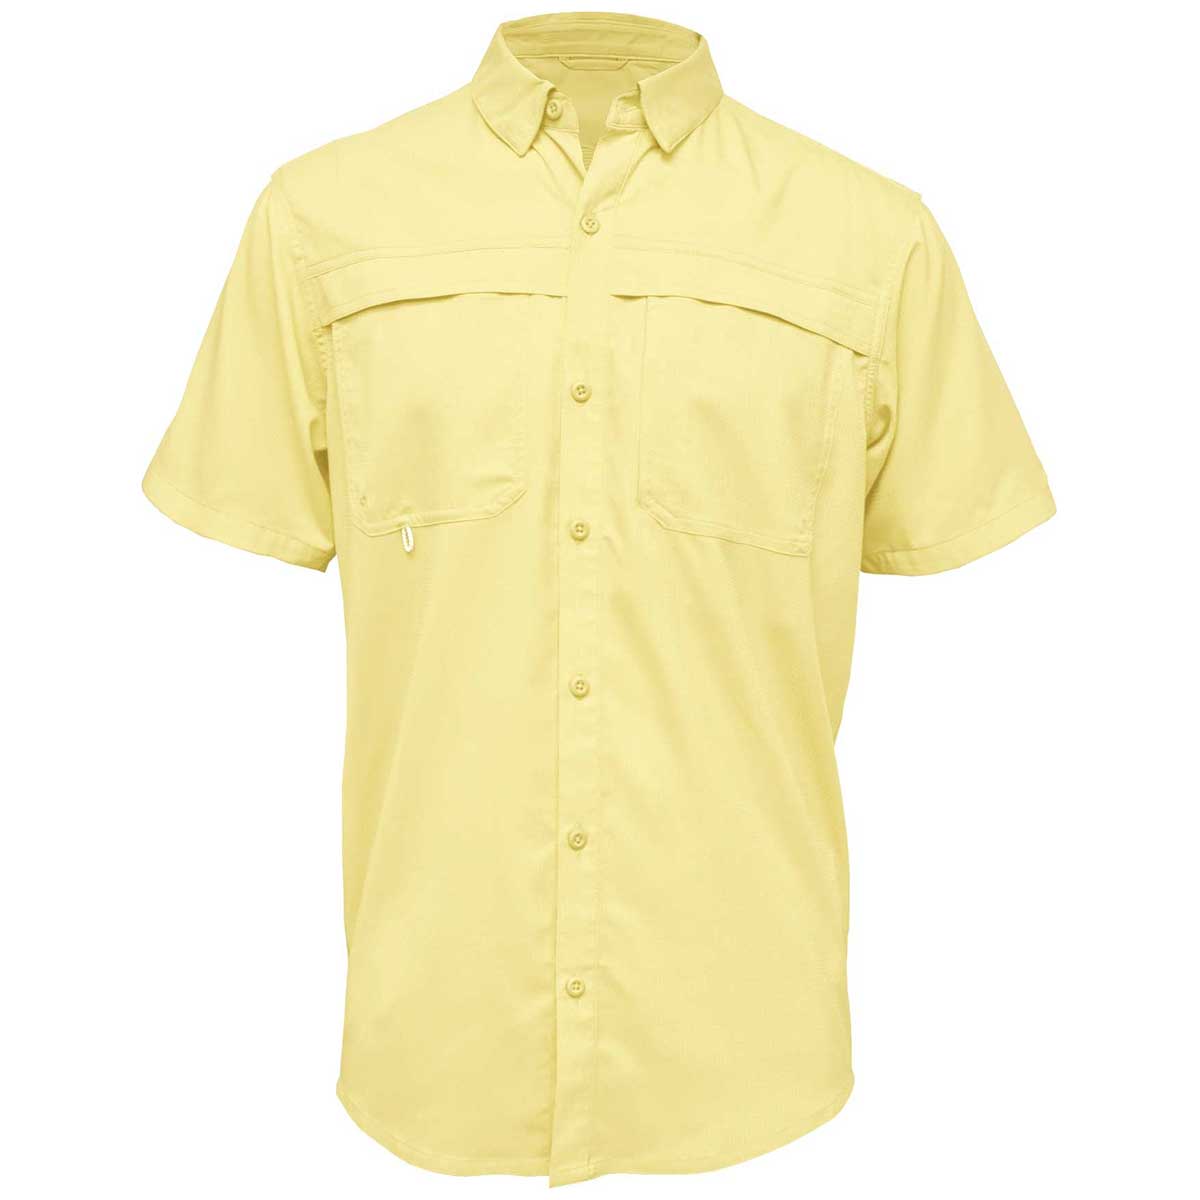 BAW Men's Charcoal Short Sleeve Fishing Shirt